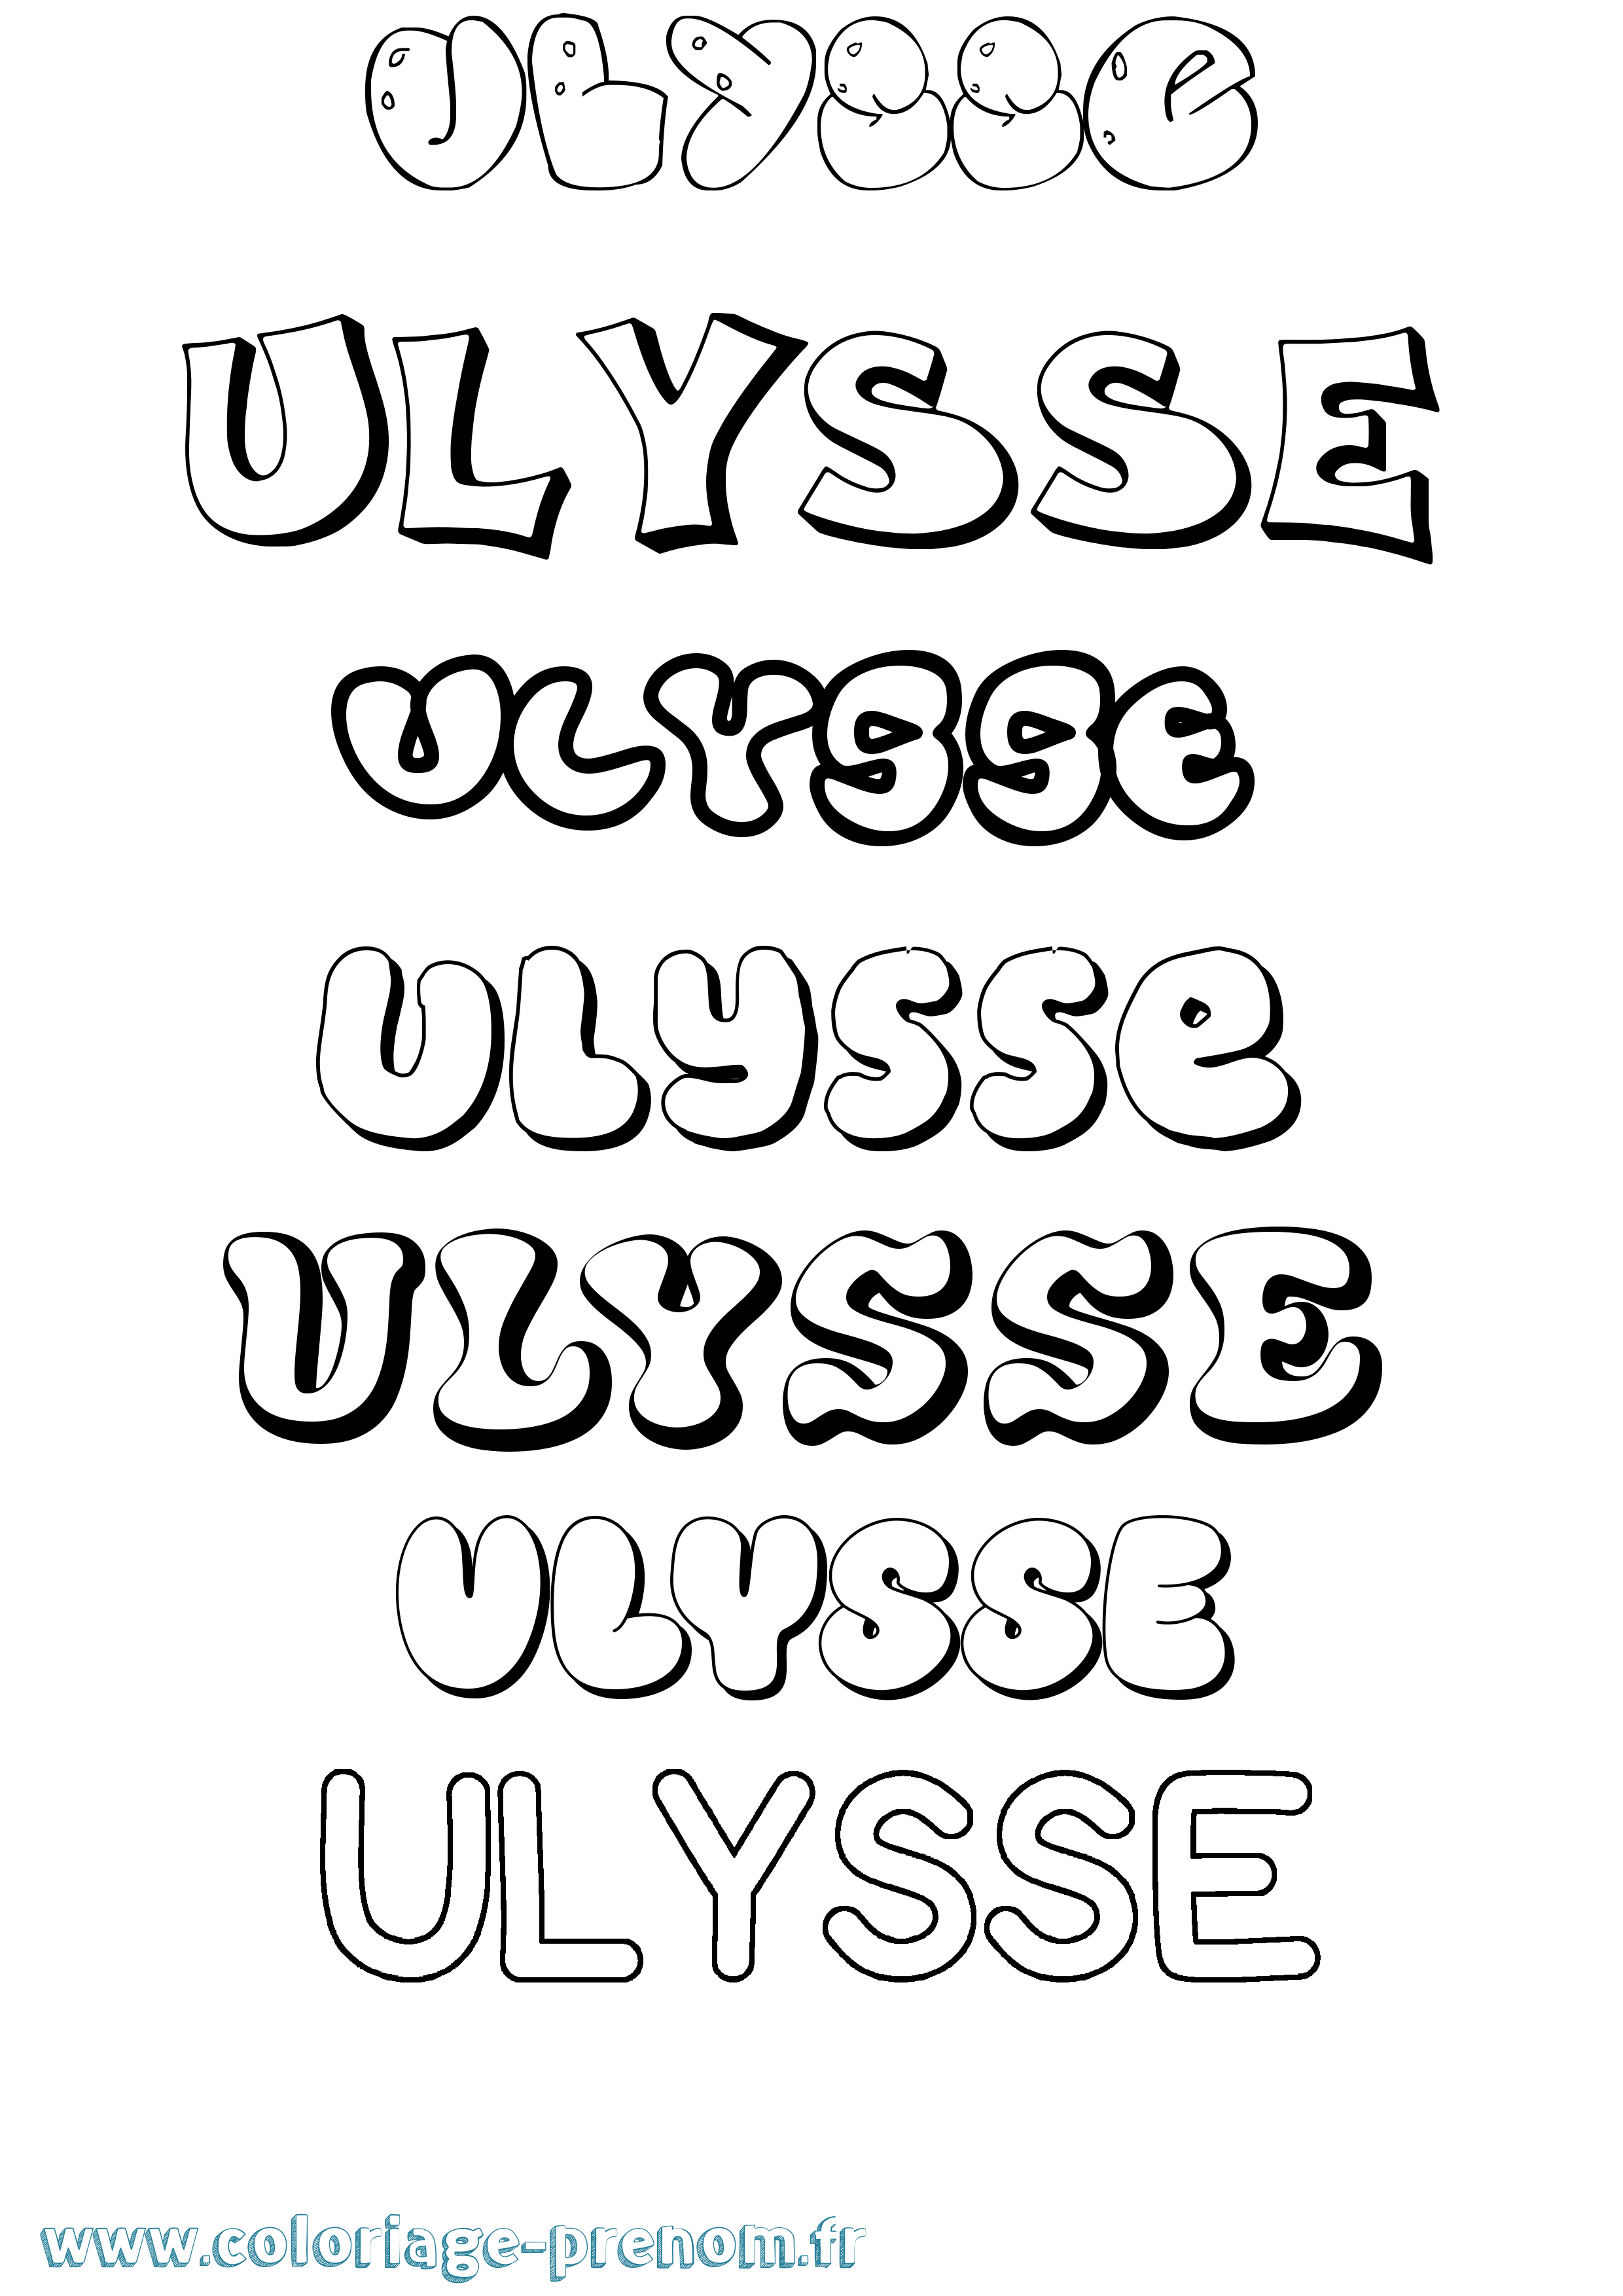 Coloriage prénom Ulysse Bubble